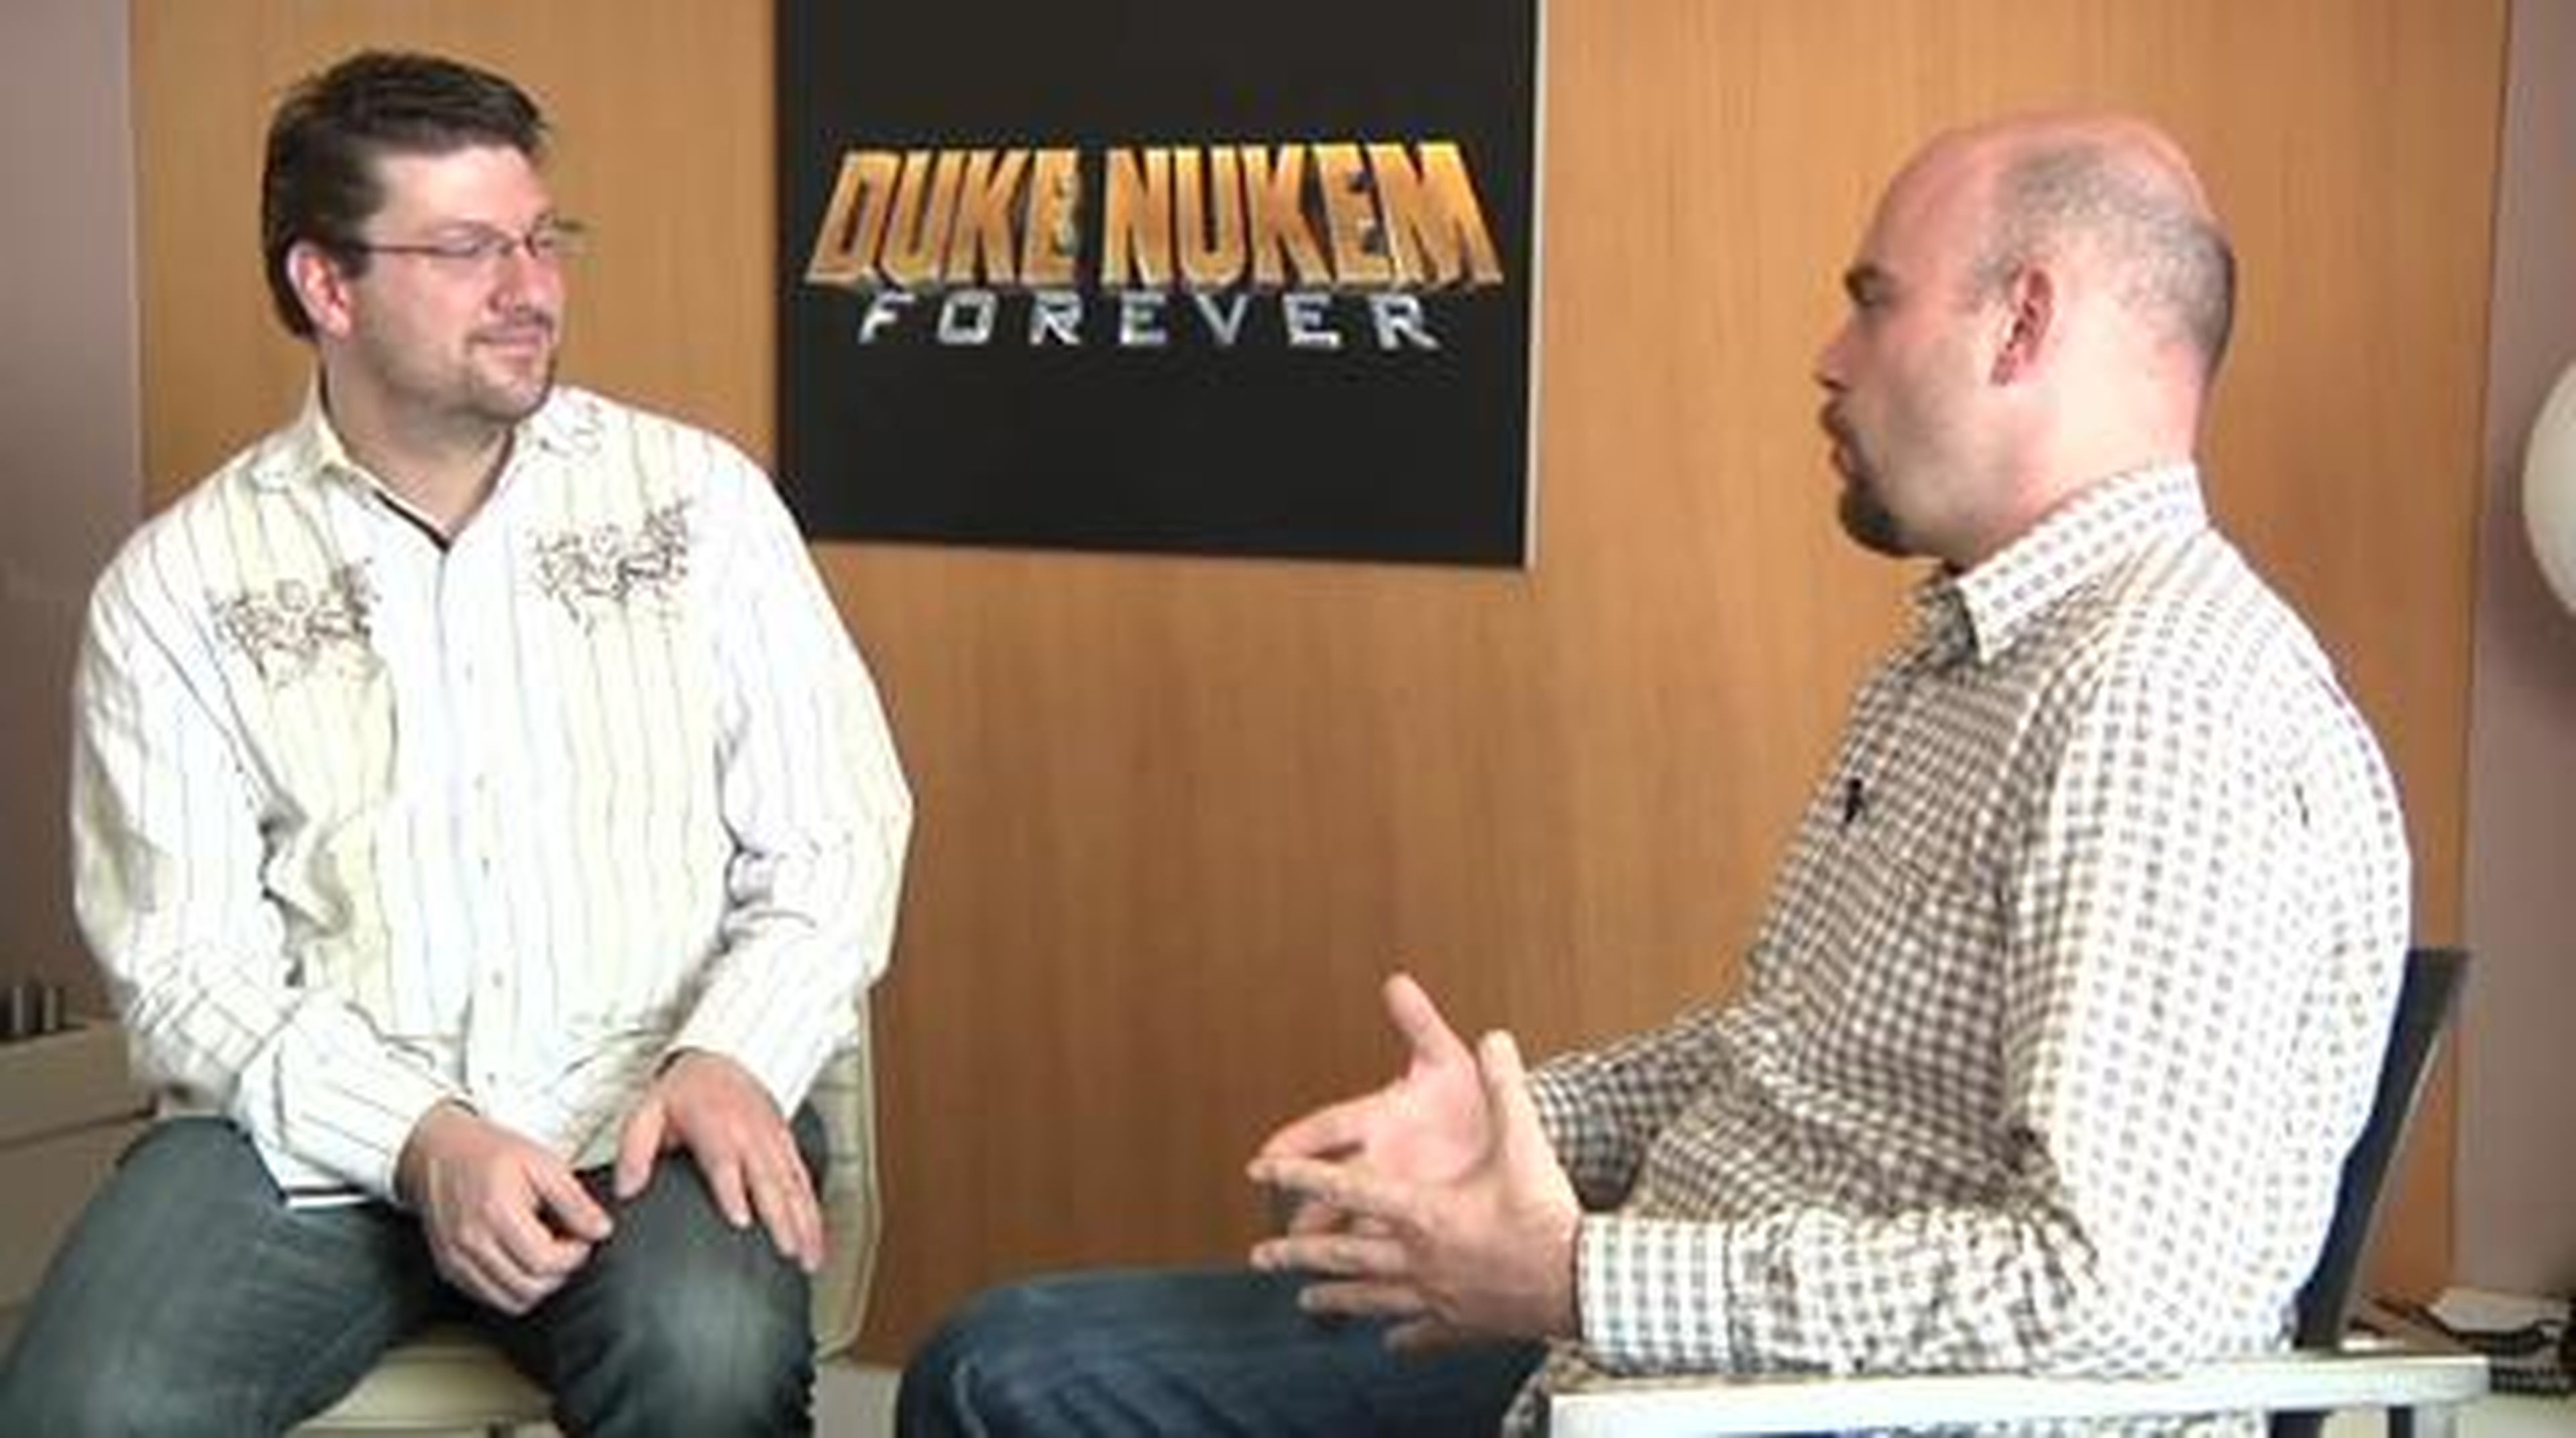 Entrevista: Duke Nukem Forever en HobbyNews.es